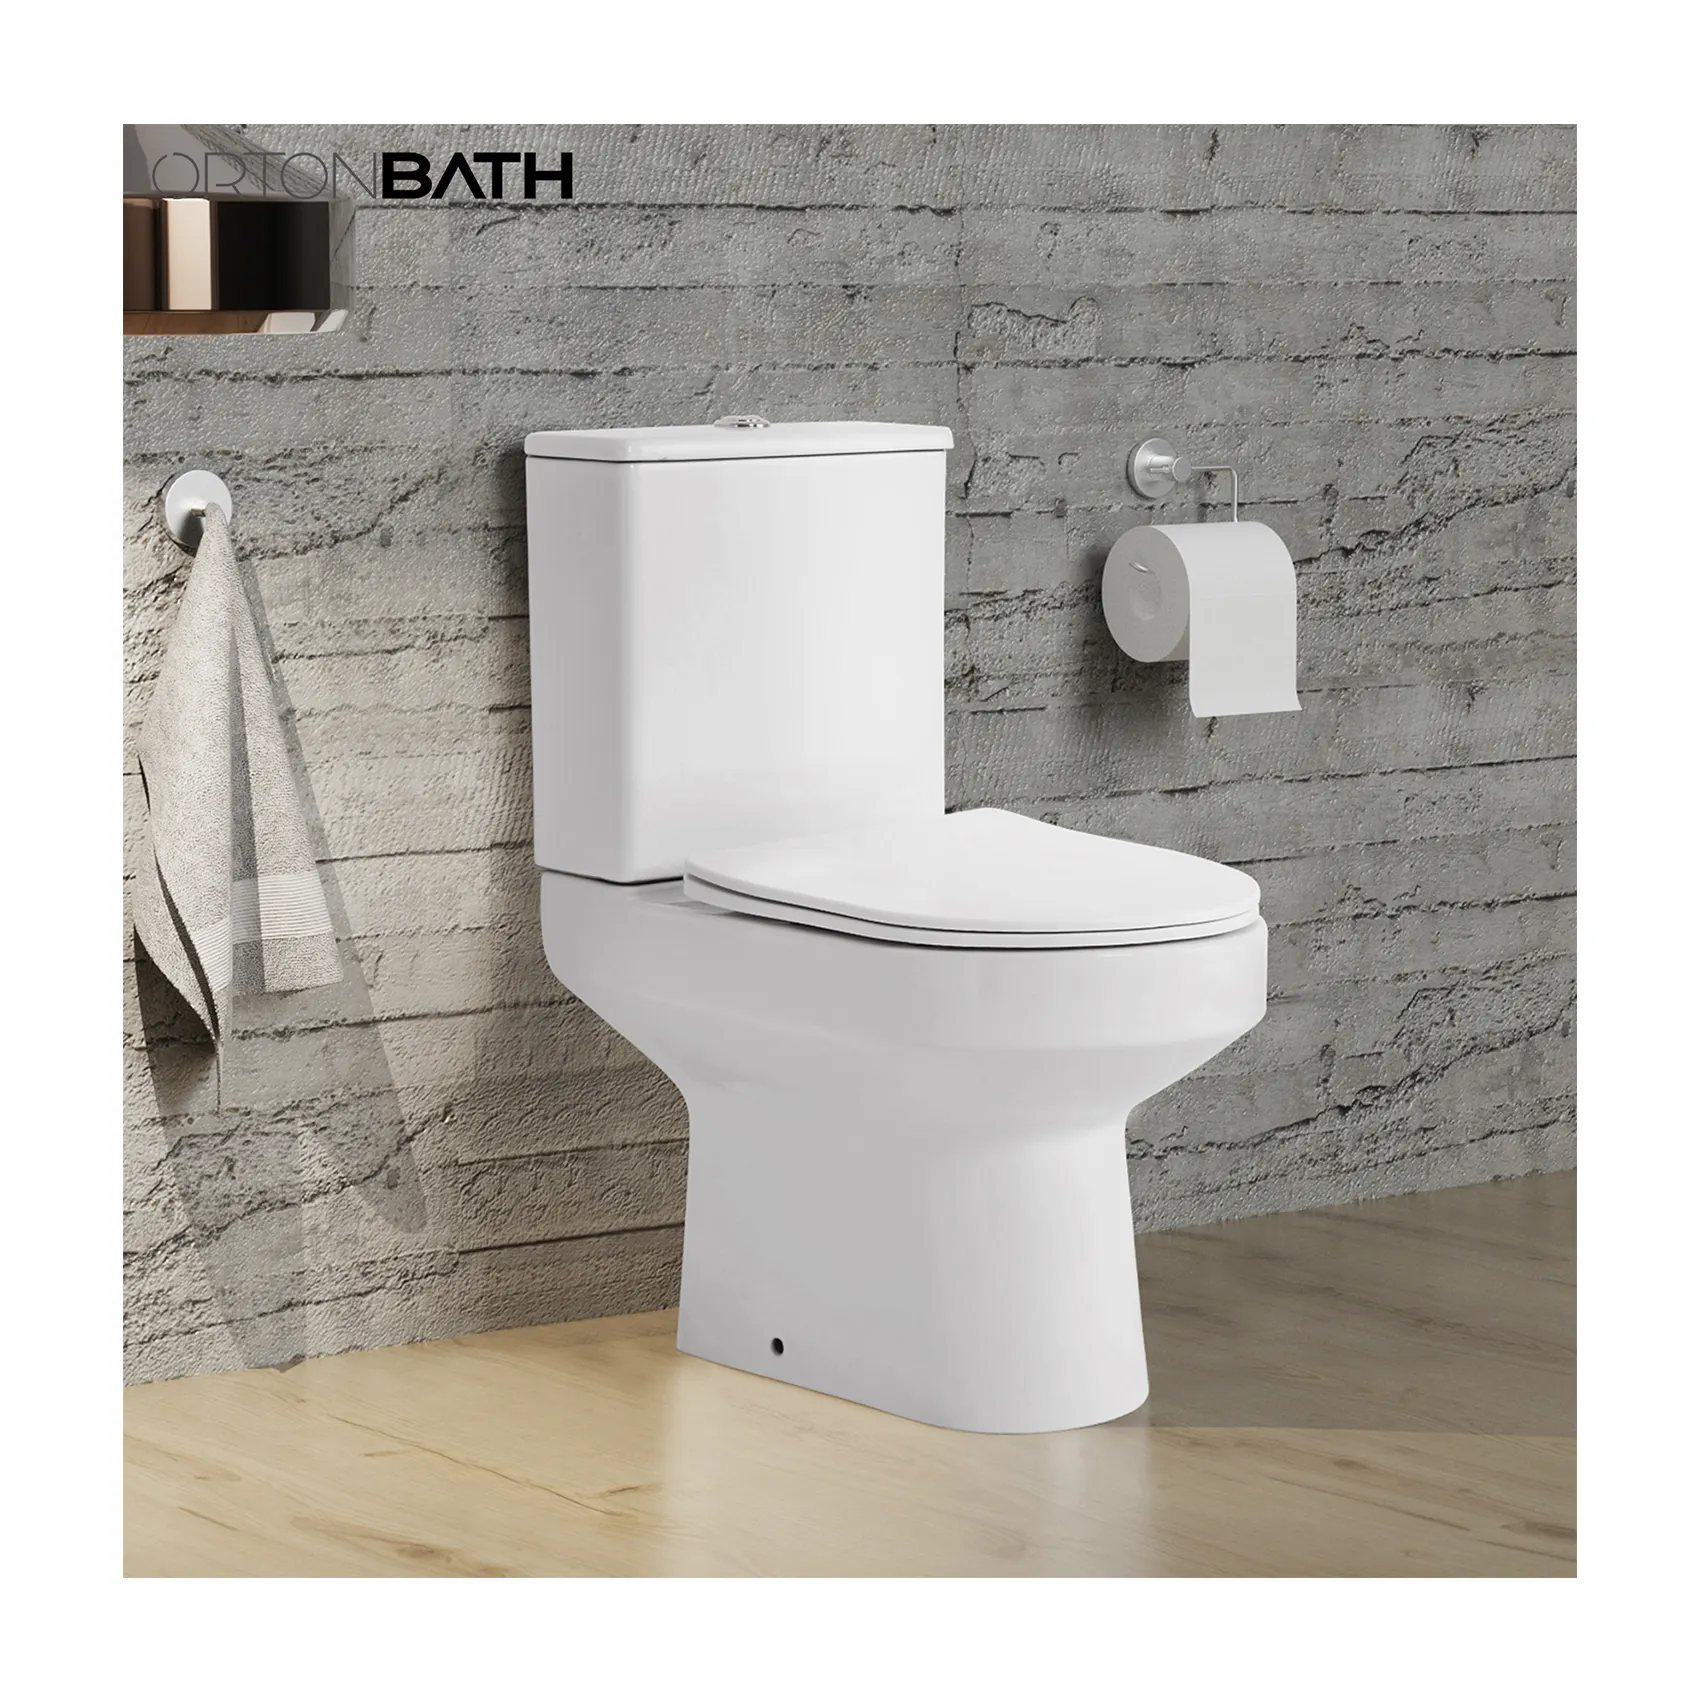 ORTONBATH New Design UK Europa Günstige Dual Flush P Trap Zweiteilige Toilette WC Wassers chrank Toilette mit Soft Close Sitz bezug